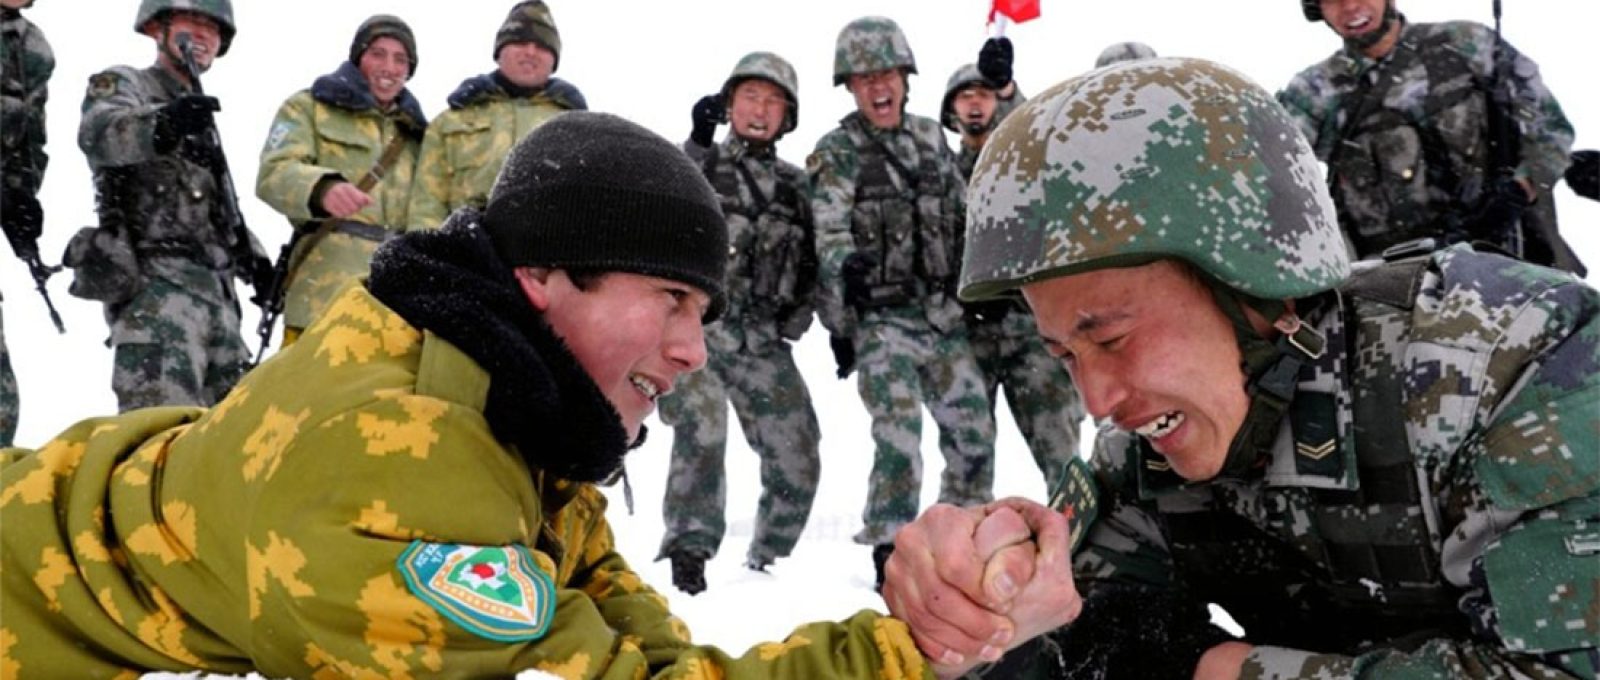 Soldados chineses e tadjiques disputam braço-de-ferro durante patrulhas perto da cidade de Kashgar, na região autônoma de Xinjiang, no noroeste, em maio de 2019 (EPA-EFE).